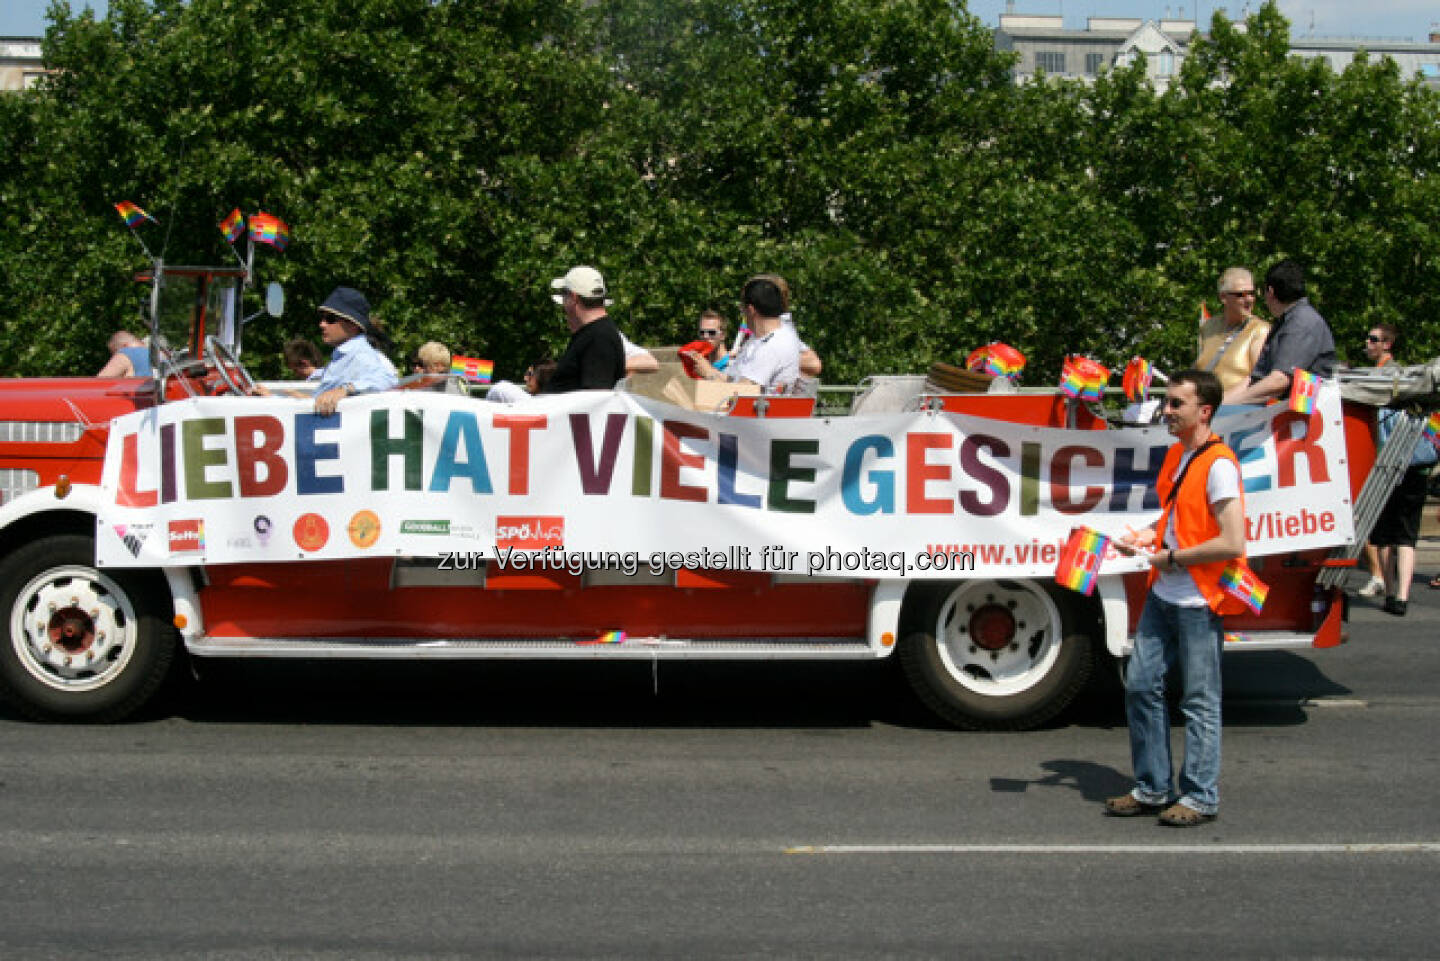 Regenbogenparade in Wien, Liebe hat viele Gesichter